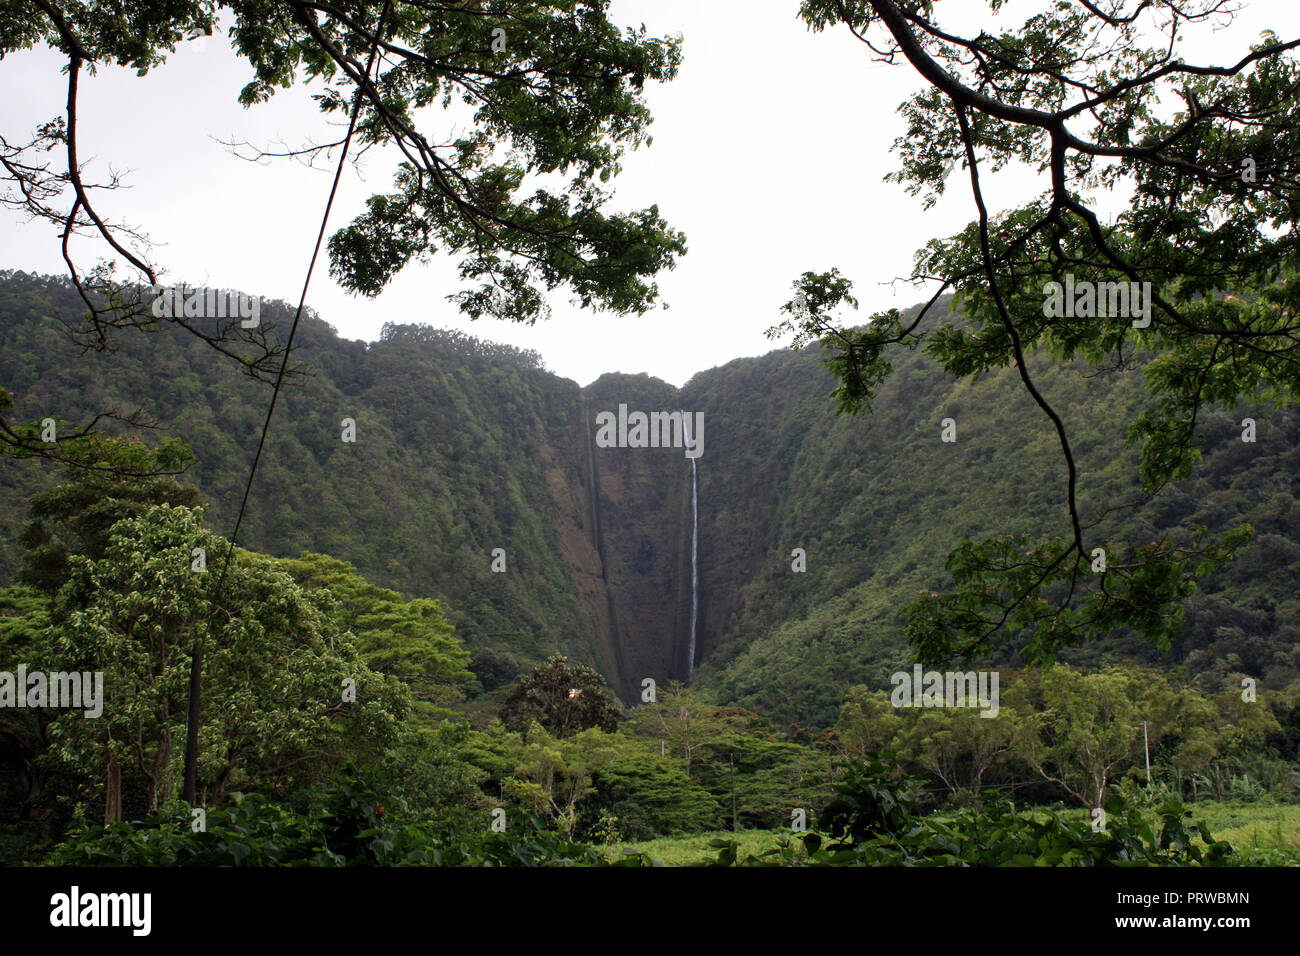 Hiilawe Falls cascadant une falaise située à l'arrière de Waipio Valley entouré d'une végétation luxuriante, dans la région de Honokaa, Hawaii, USA Banque D'Images